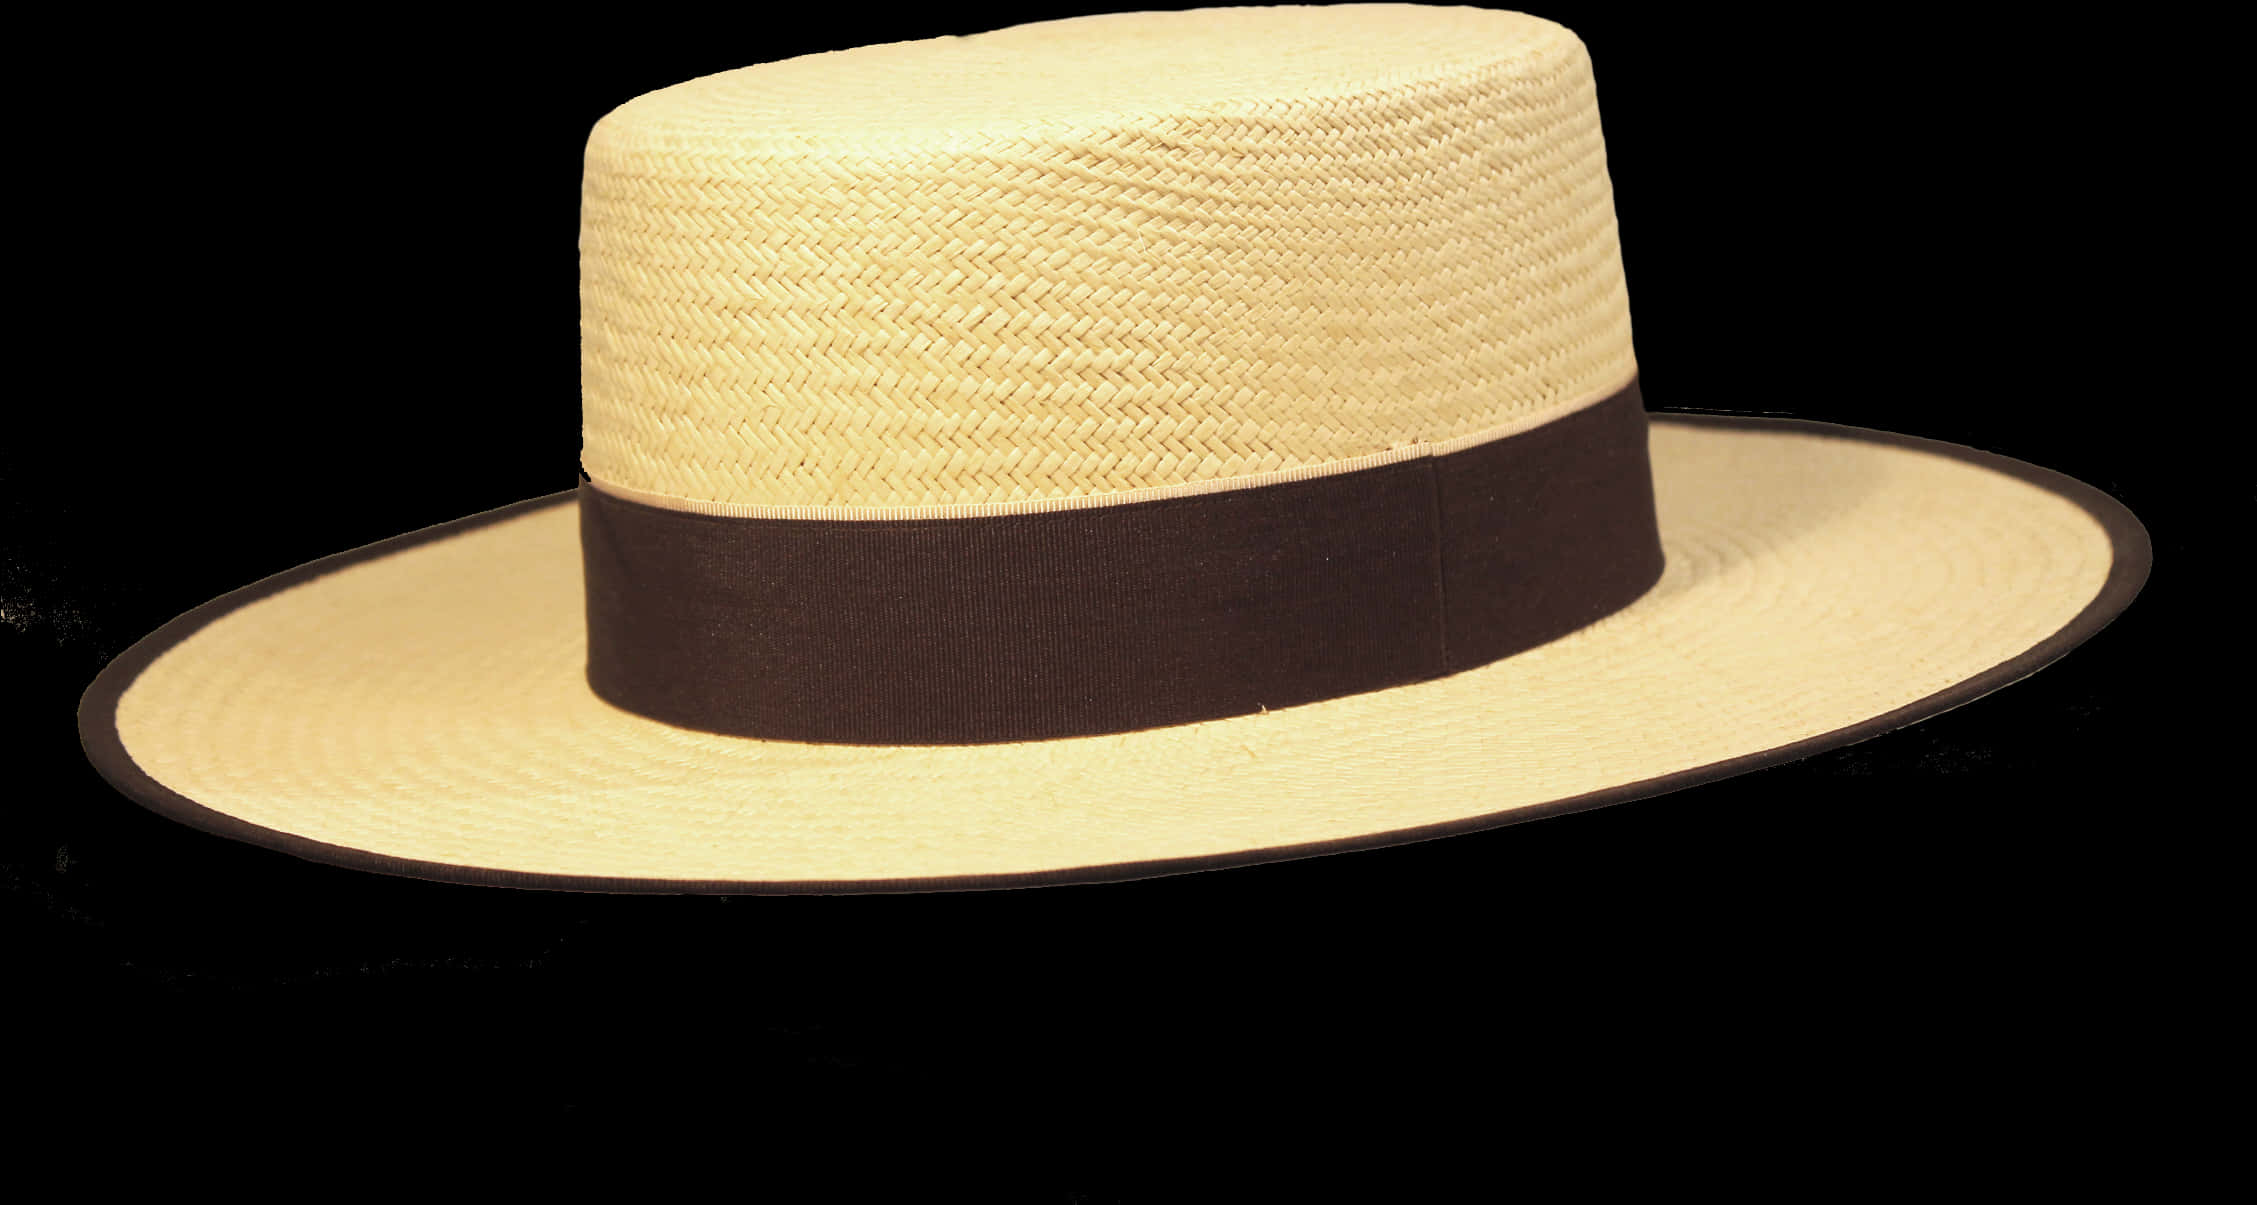 Classic Sombrero Hat Isolated